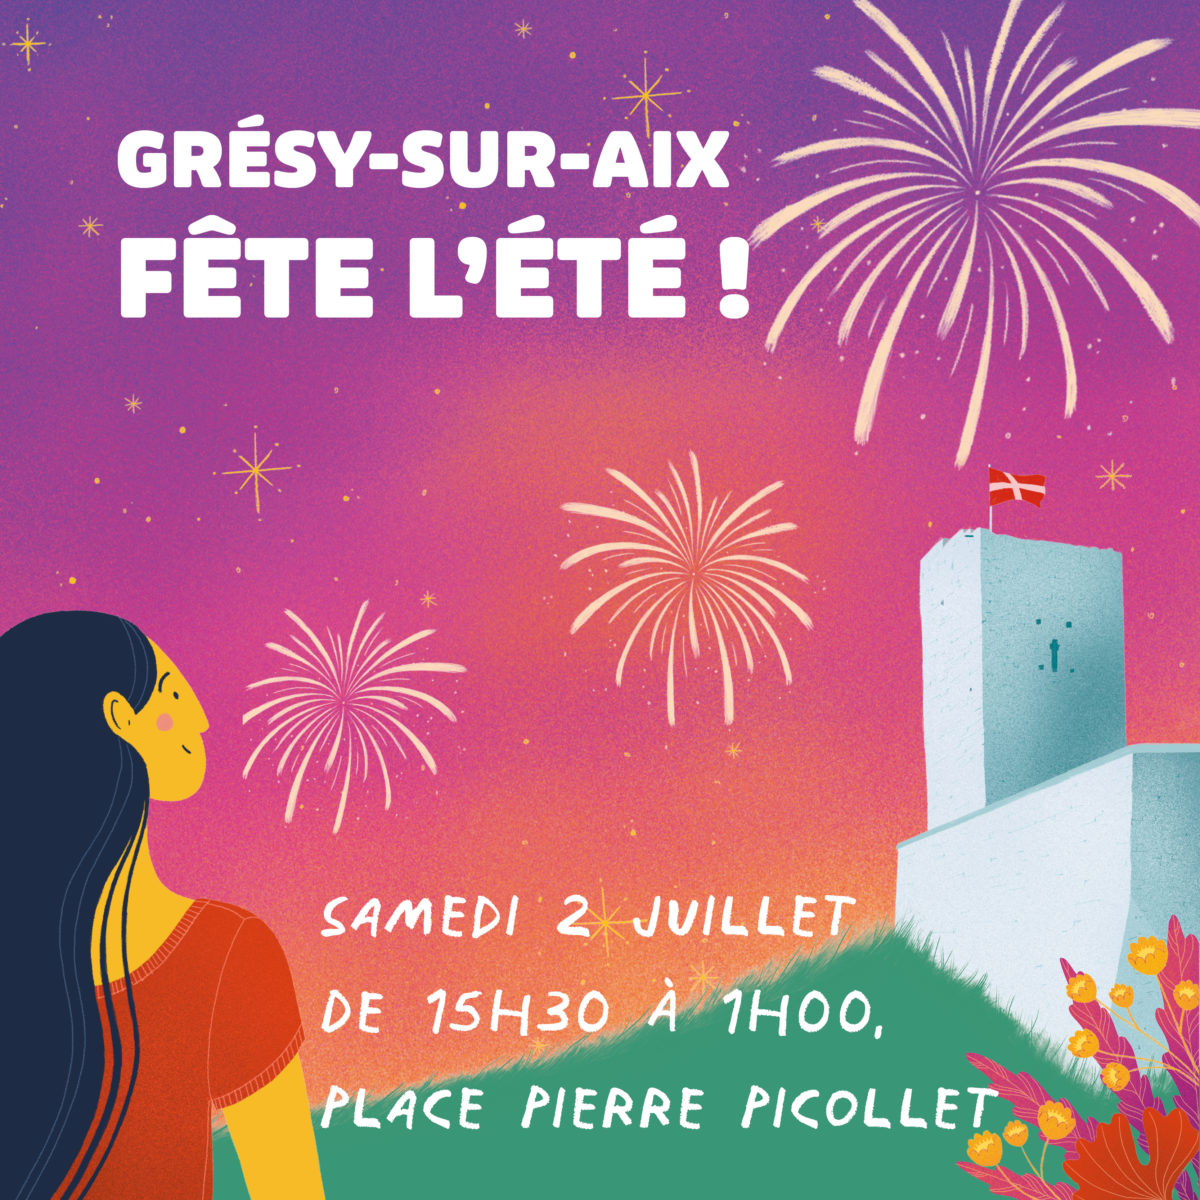 Grésy-sur-Aix fête l’été !